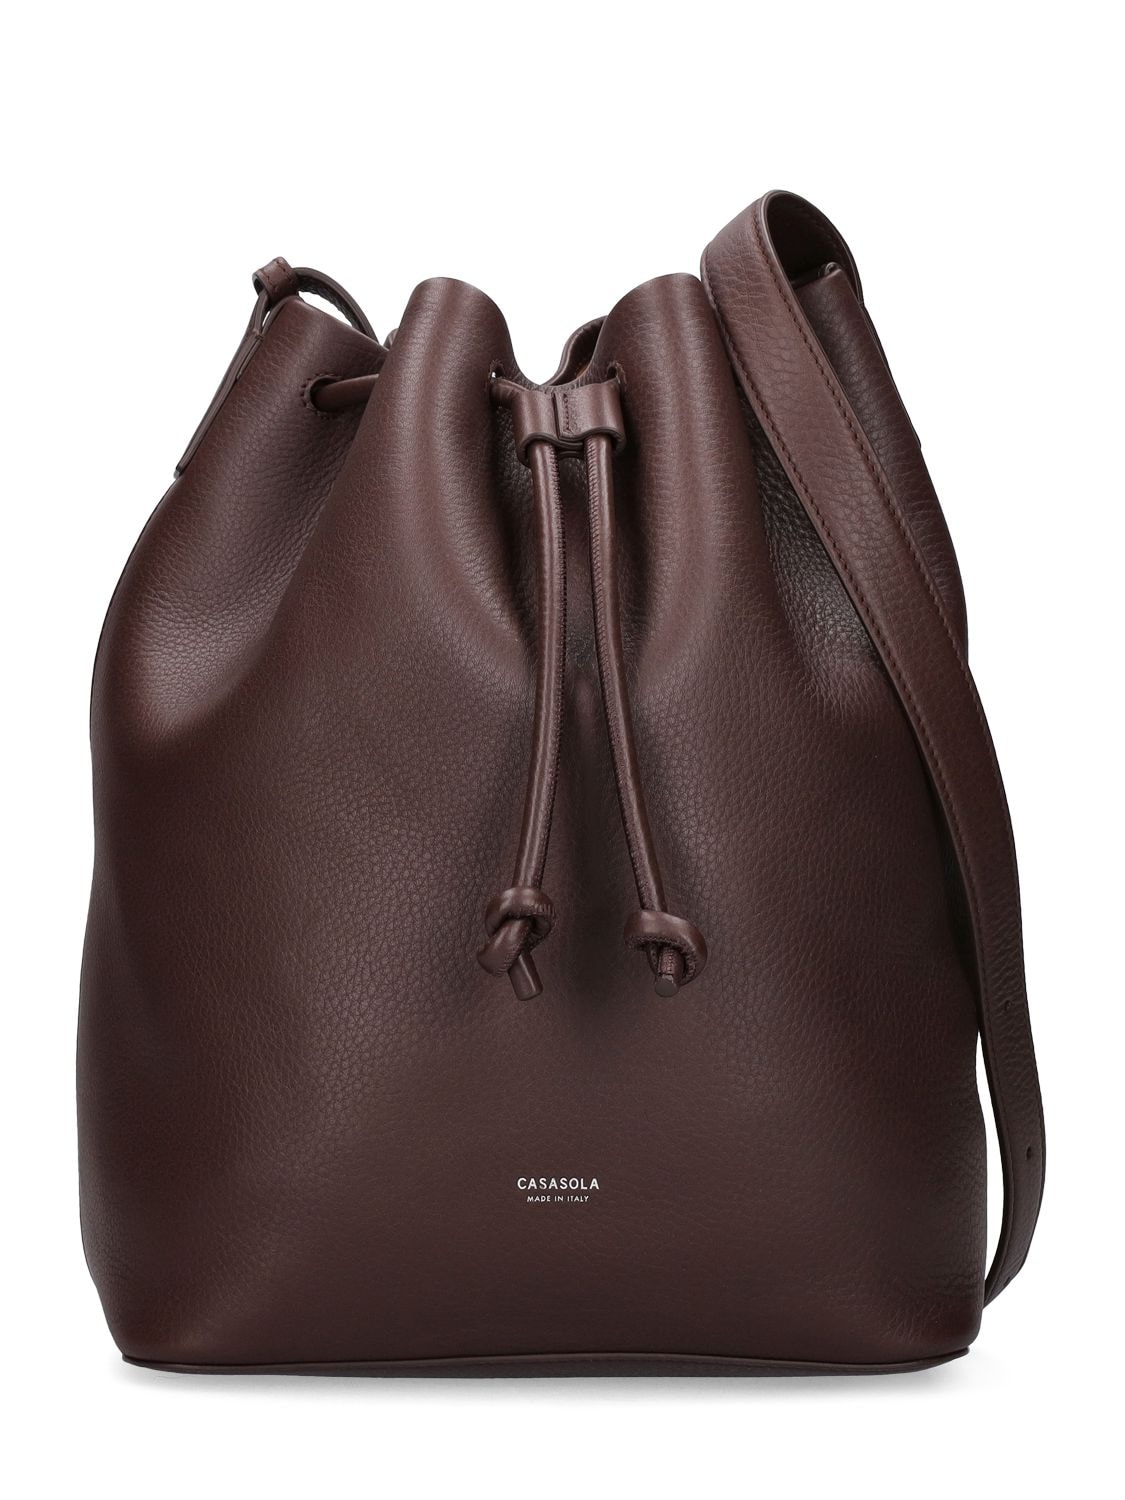 CASASOLA Large Leather Bucket Bag